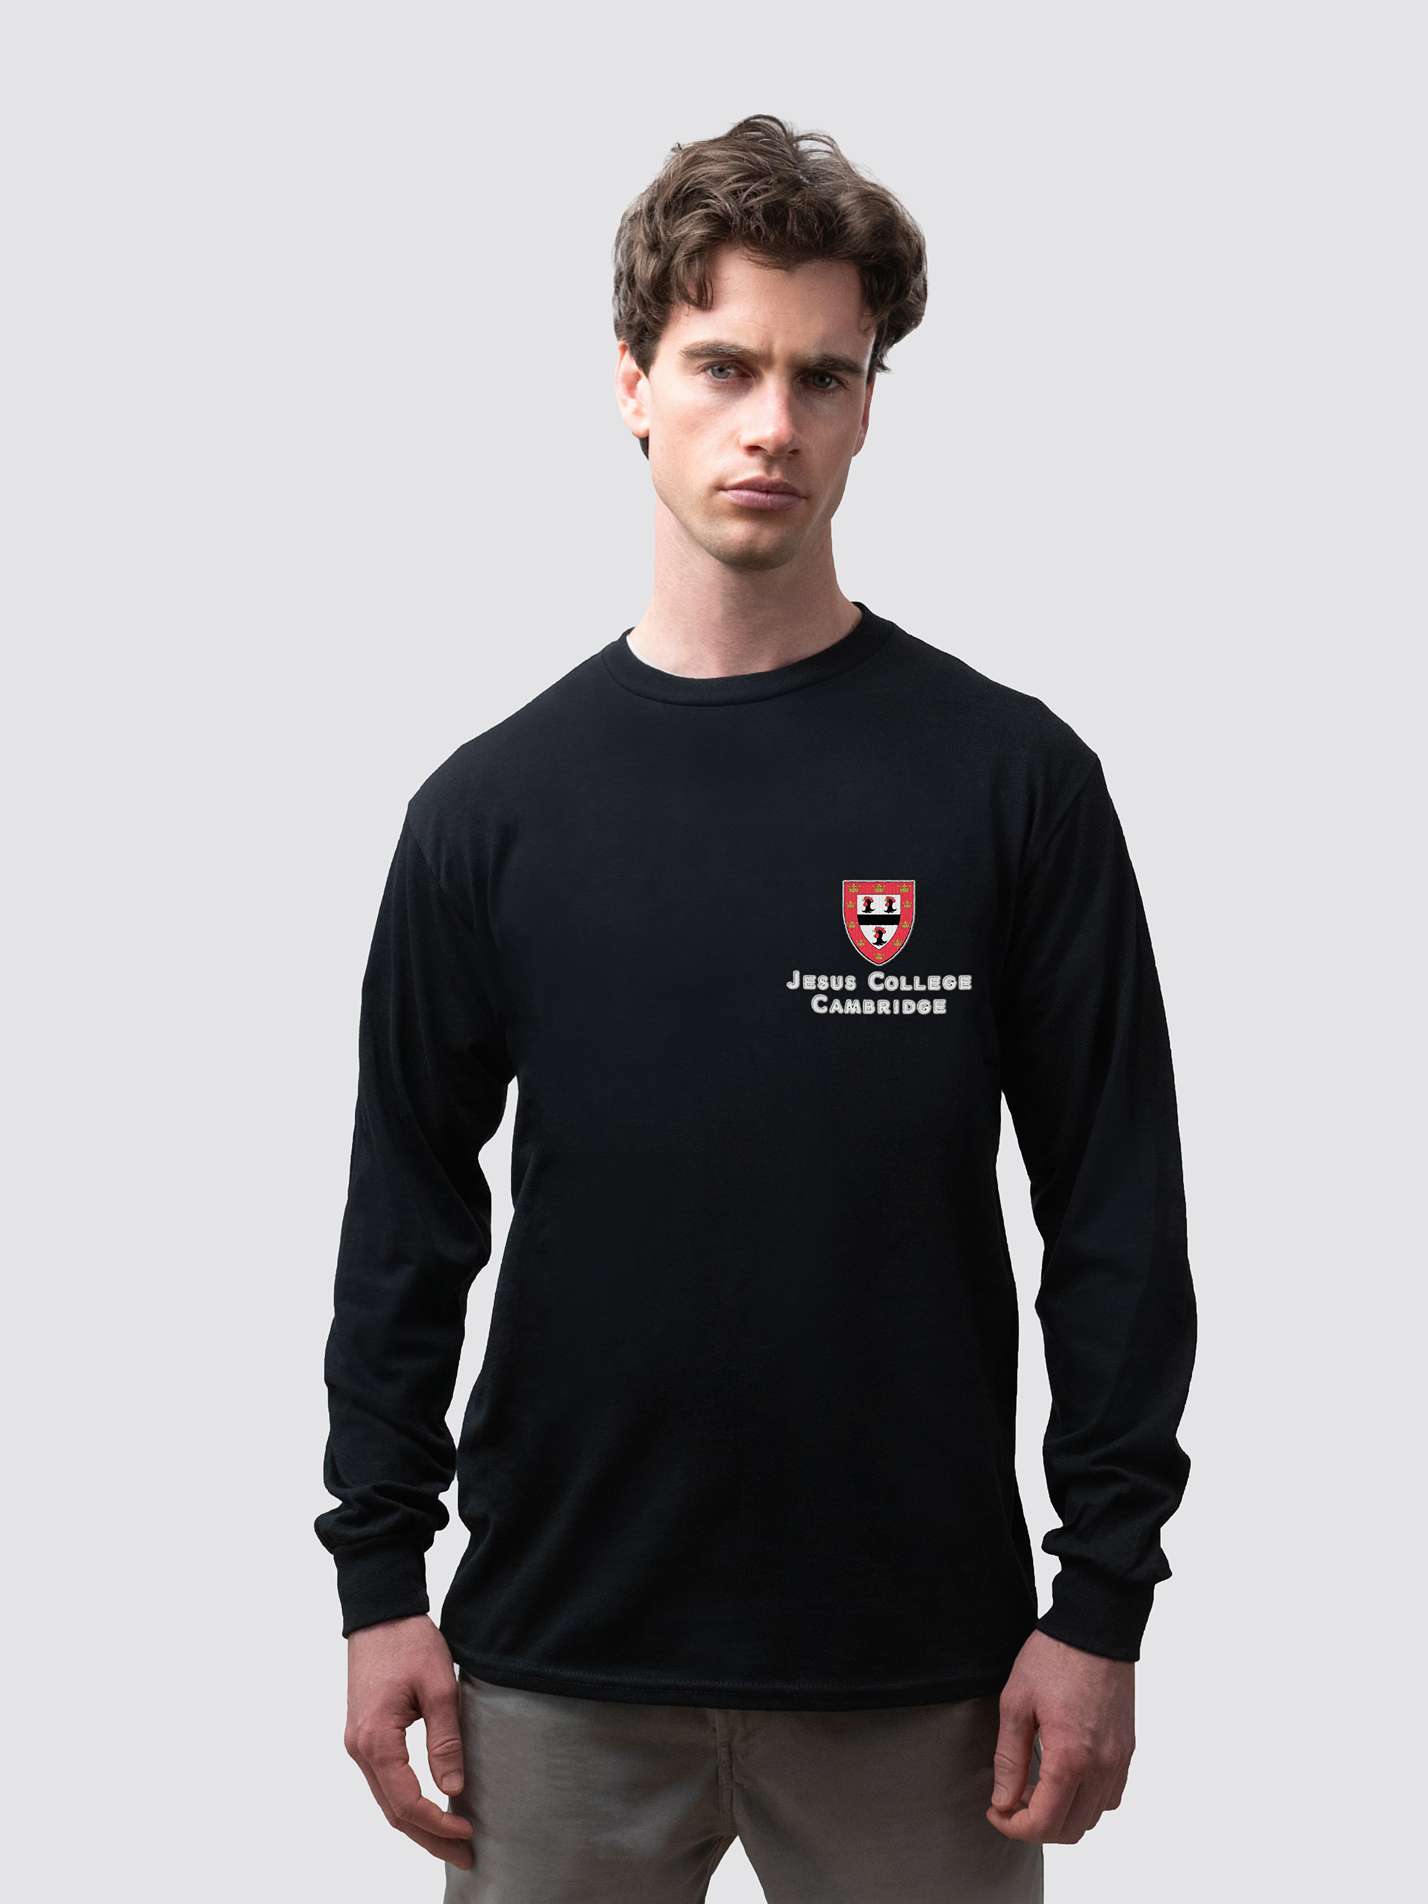 Jesus College Cambridge JCR Unisex Cotton Long Sleeve T-Shirt